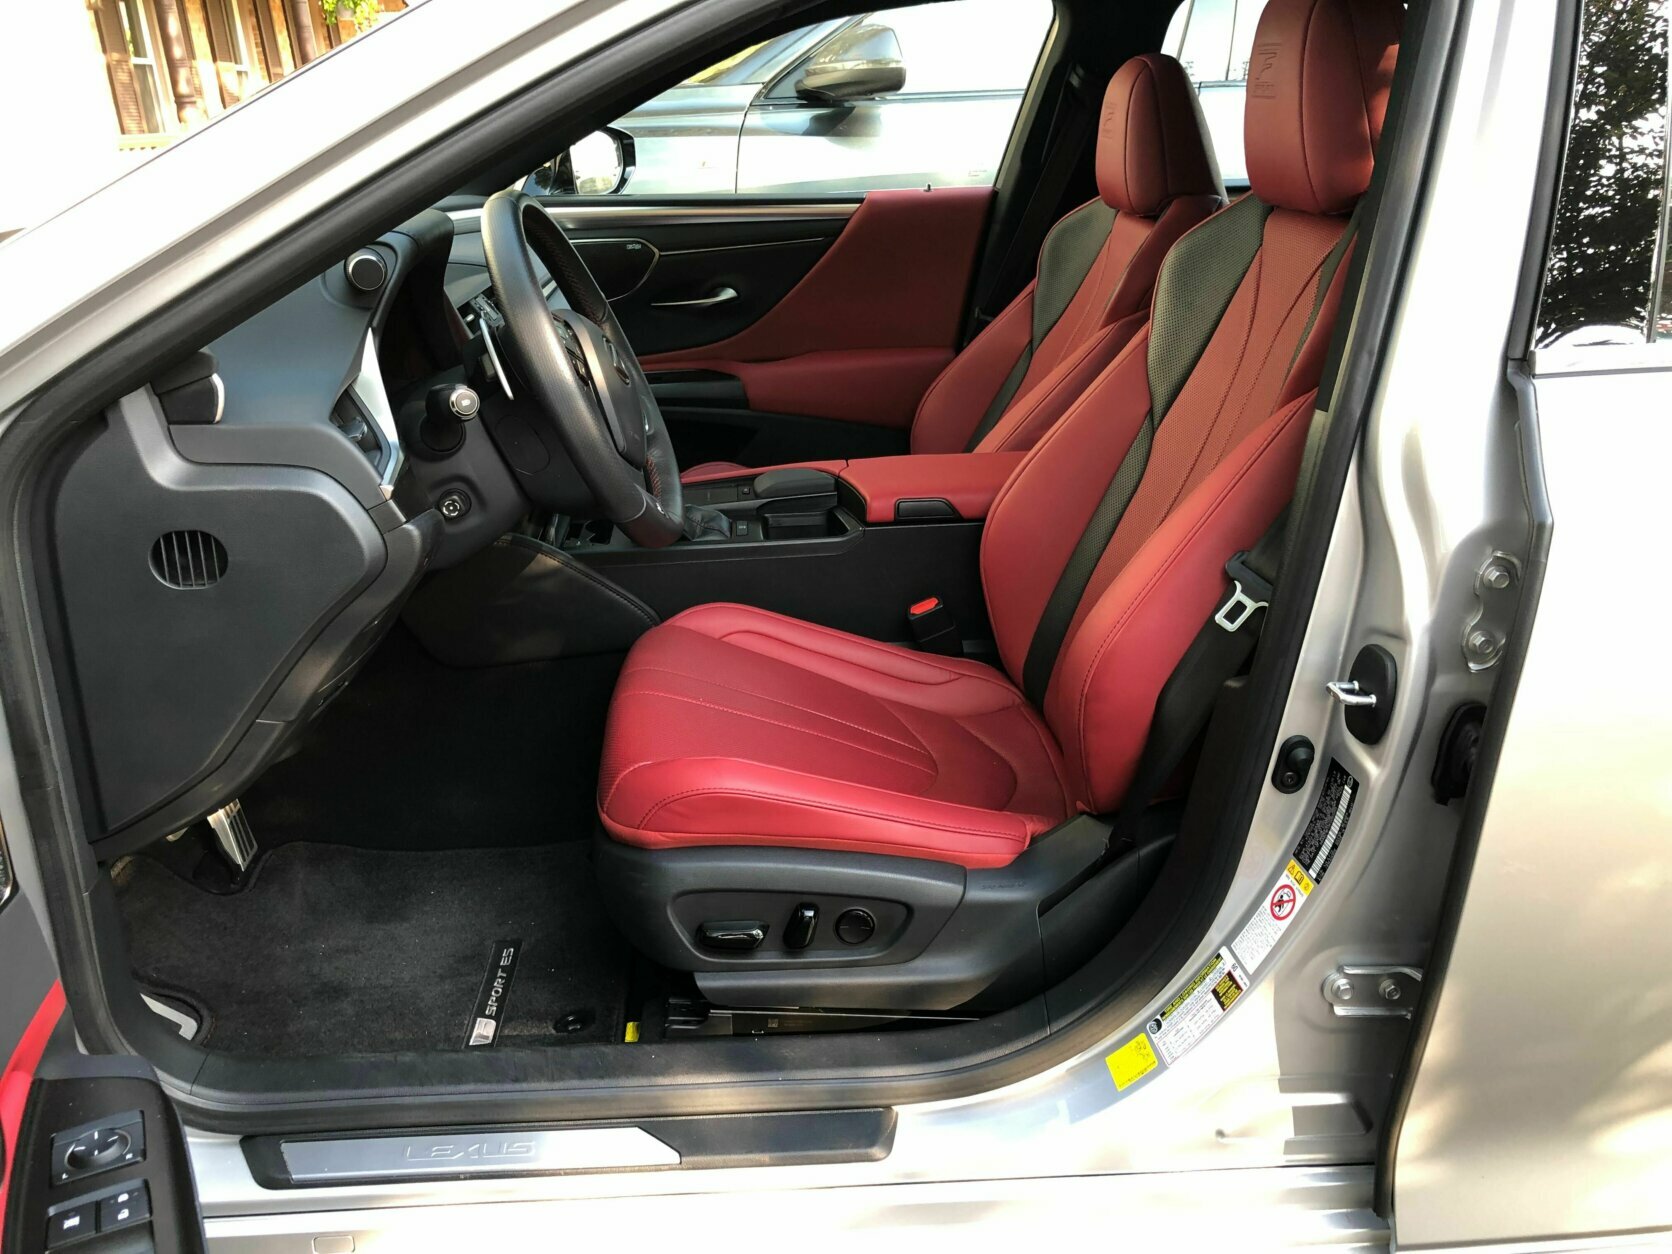 Lexus Front interior